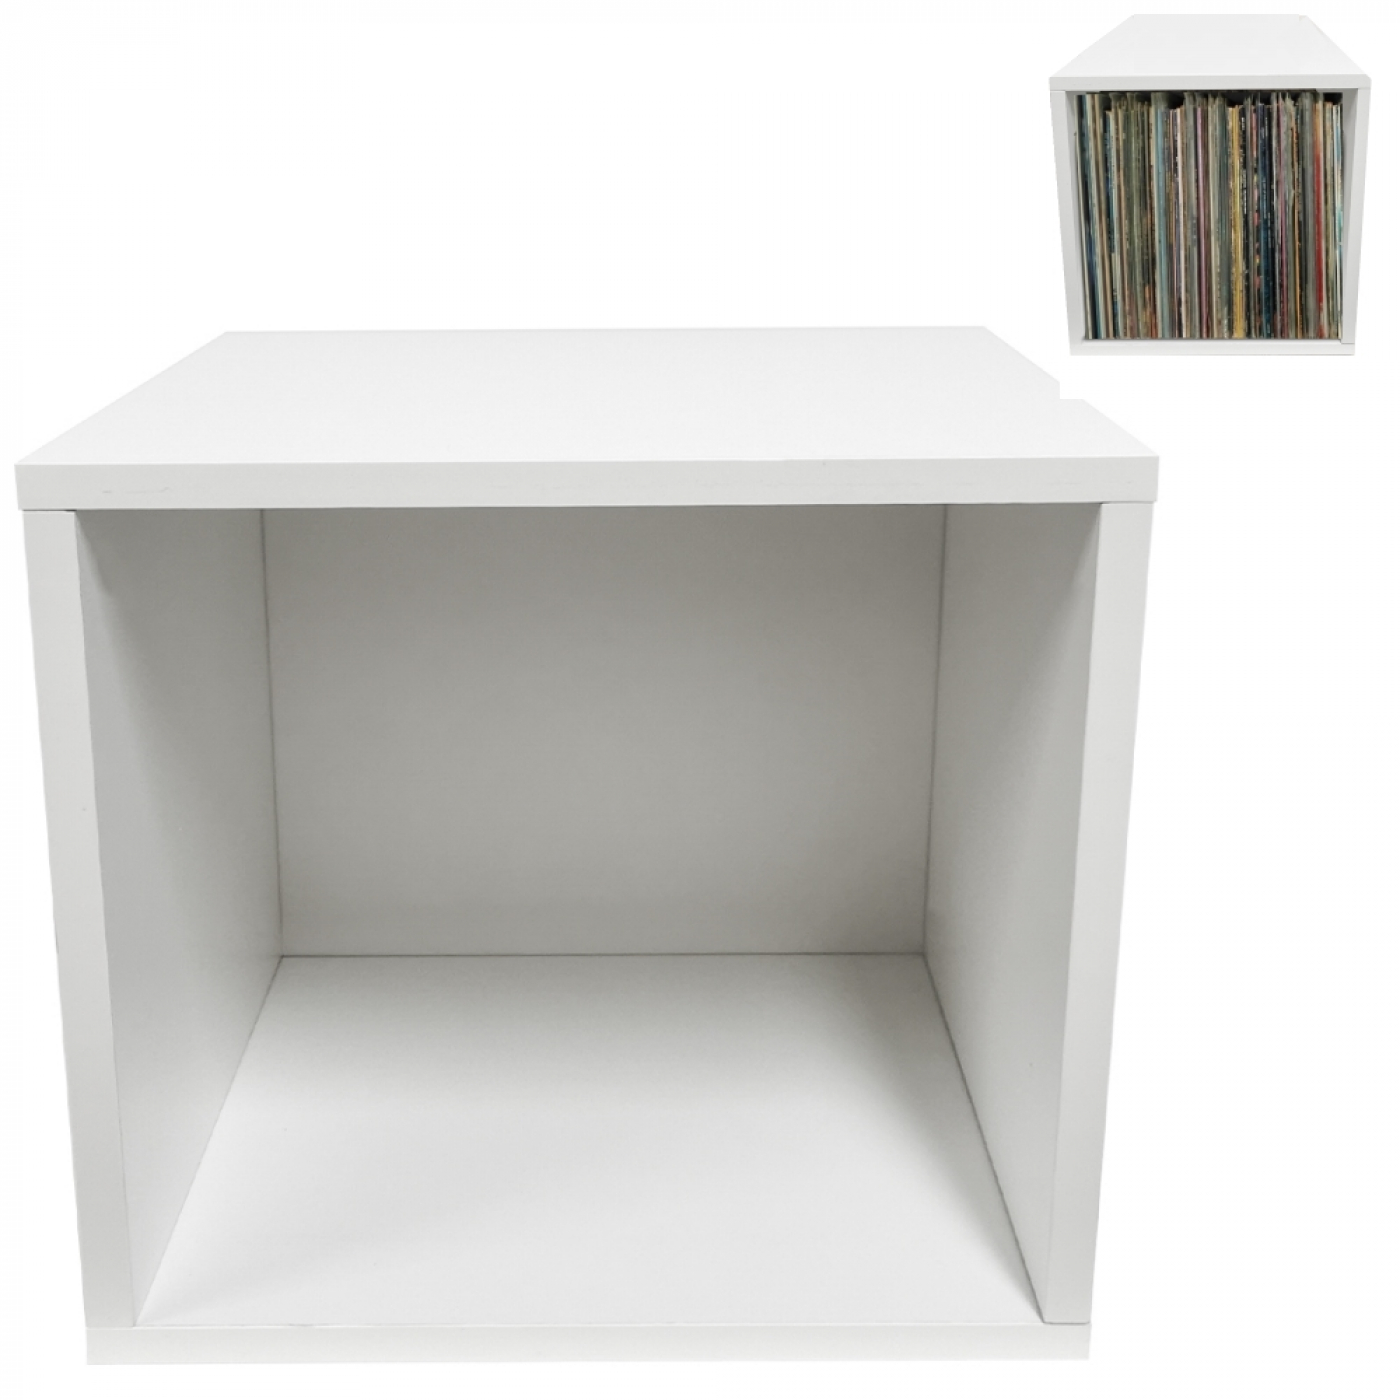 LP vinyl opbergkast kubus – platenkast – lp vinyl platen opbergrek – wit